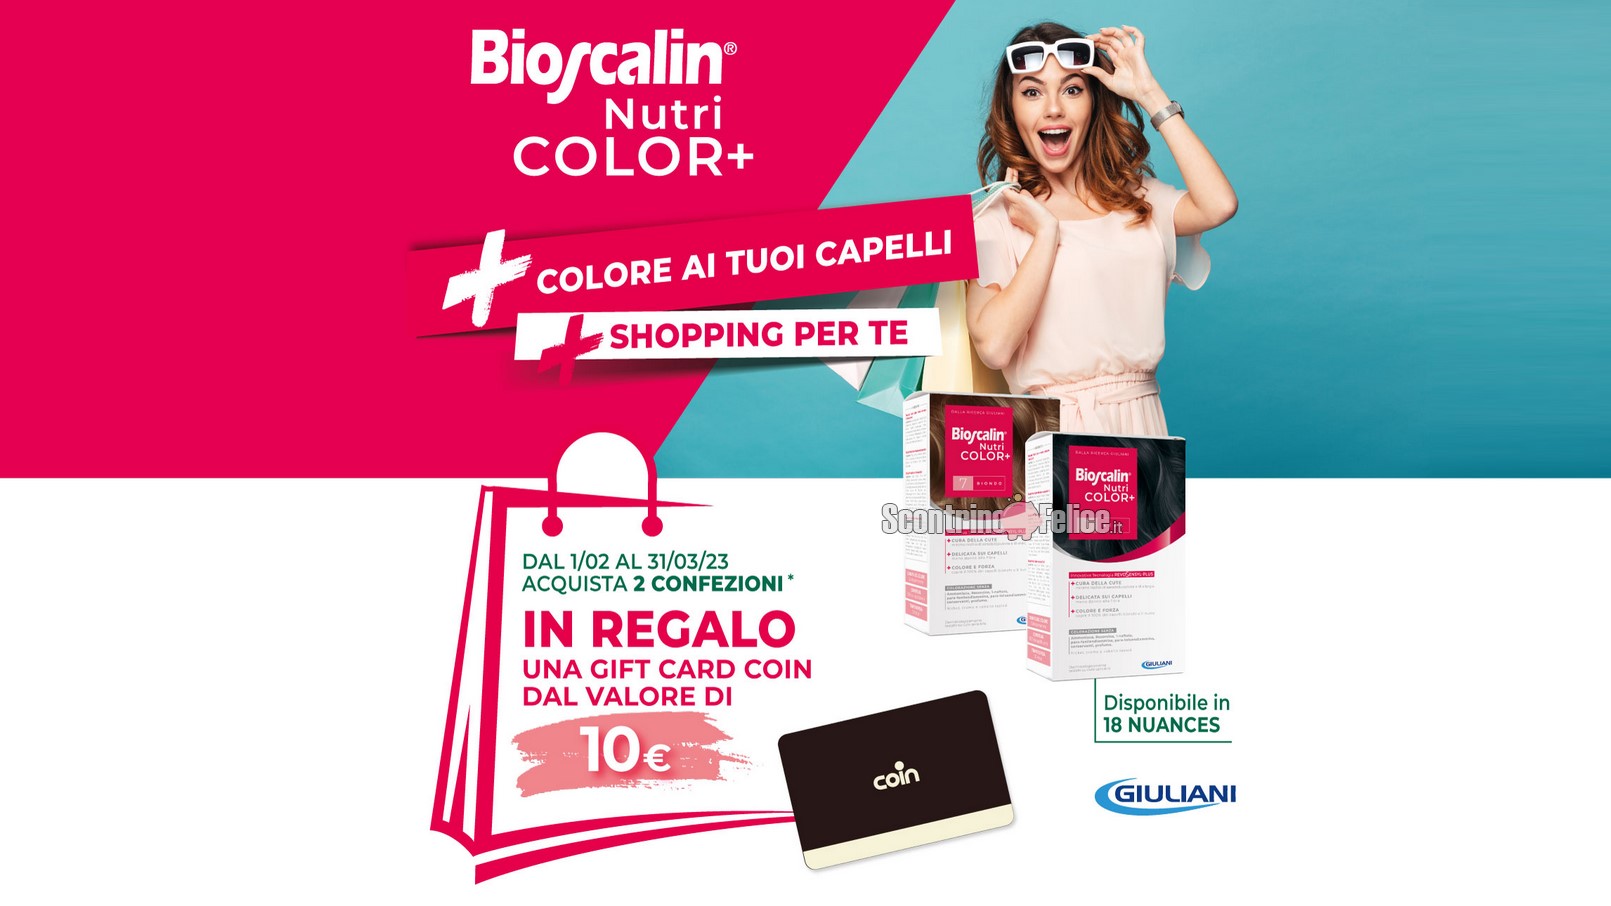 Premio Certo Bioscalin Nutri Color+: ricevi una gift card Coin da 10 euro